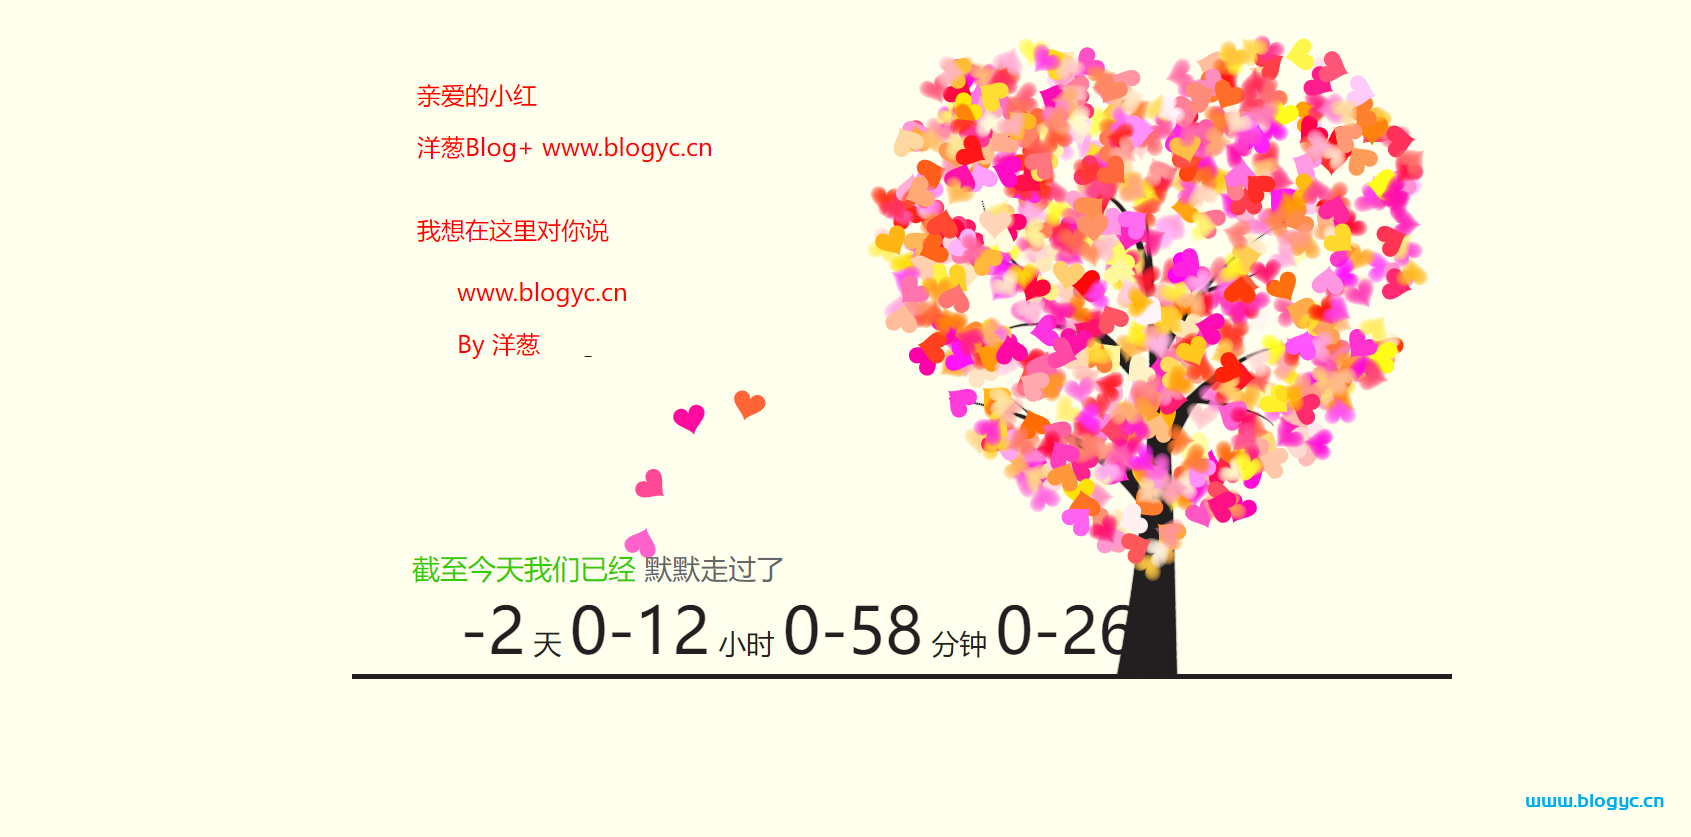 520情人节定制专属表白网页源码，为爱情加油助力！